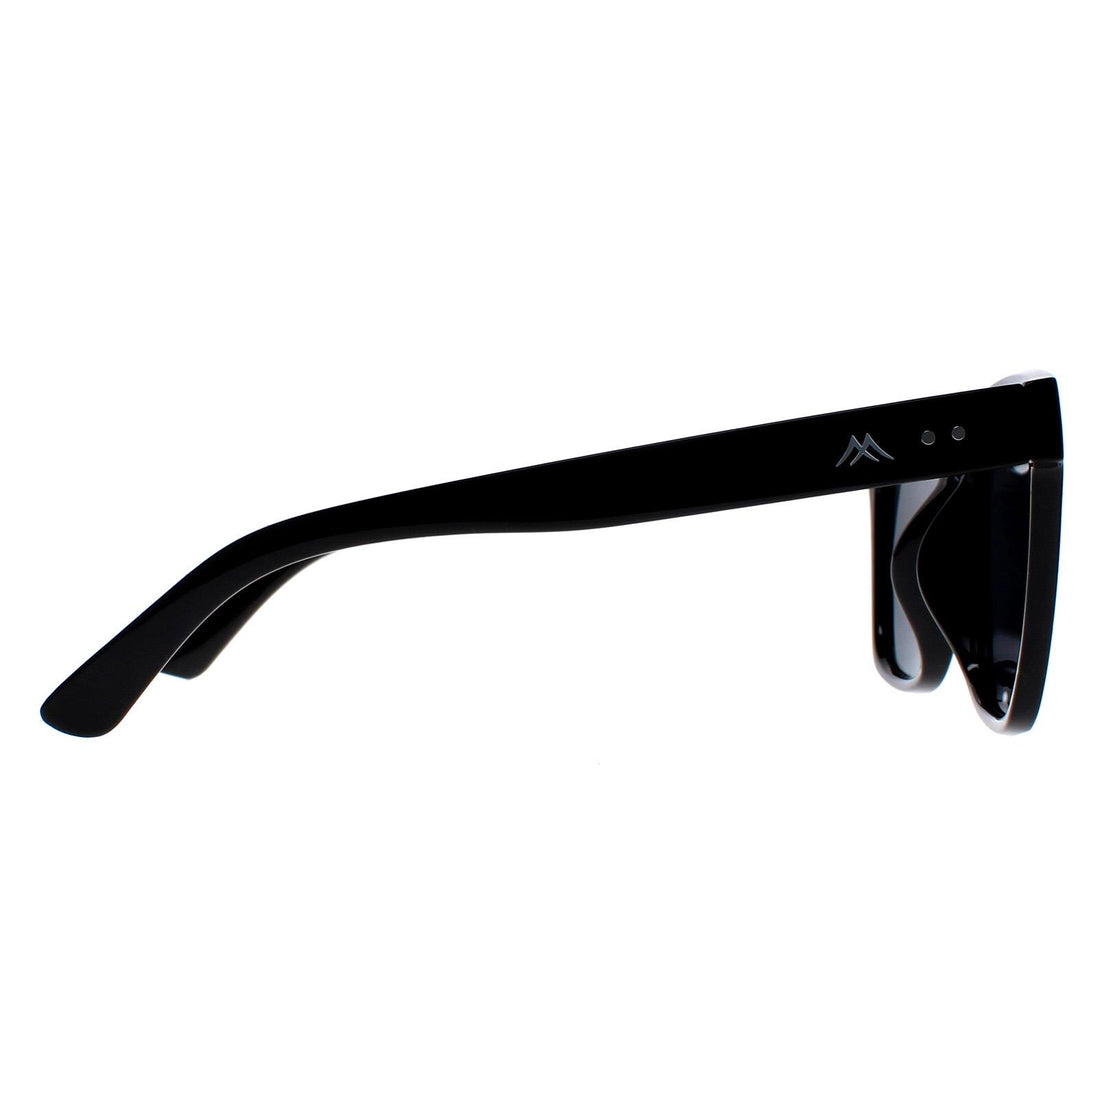 Montana Sunglasses MP72 Shiny Black Grey Polarized